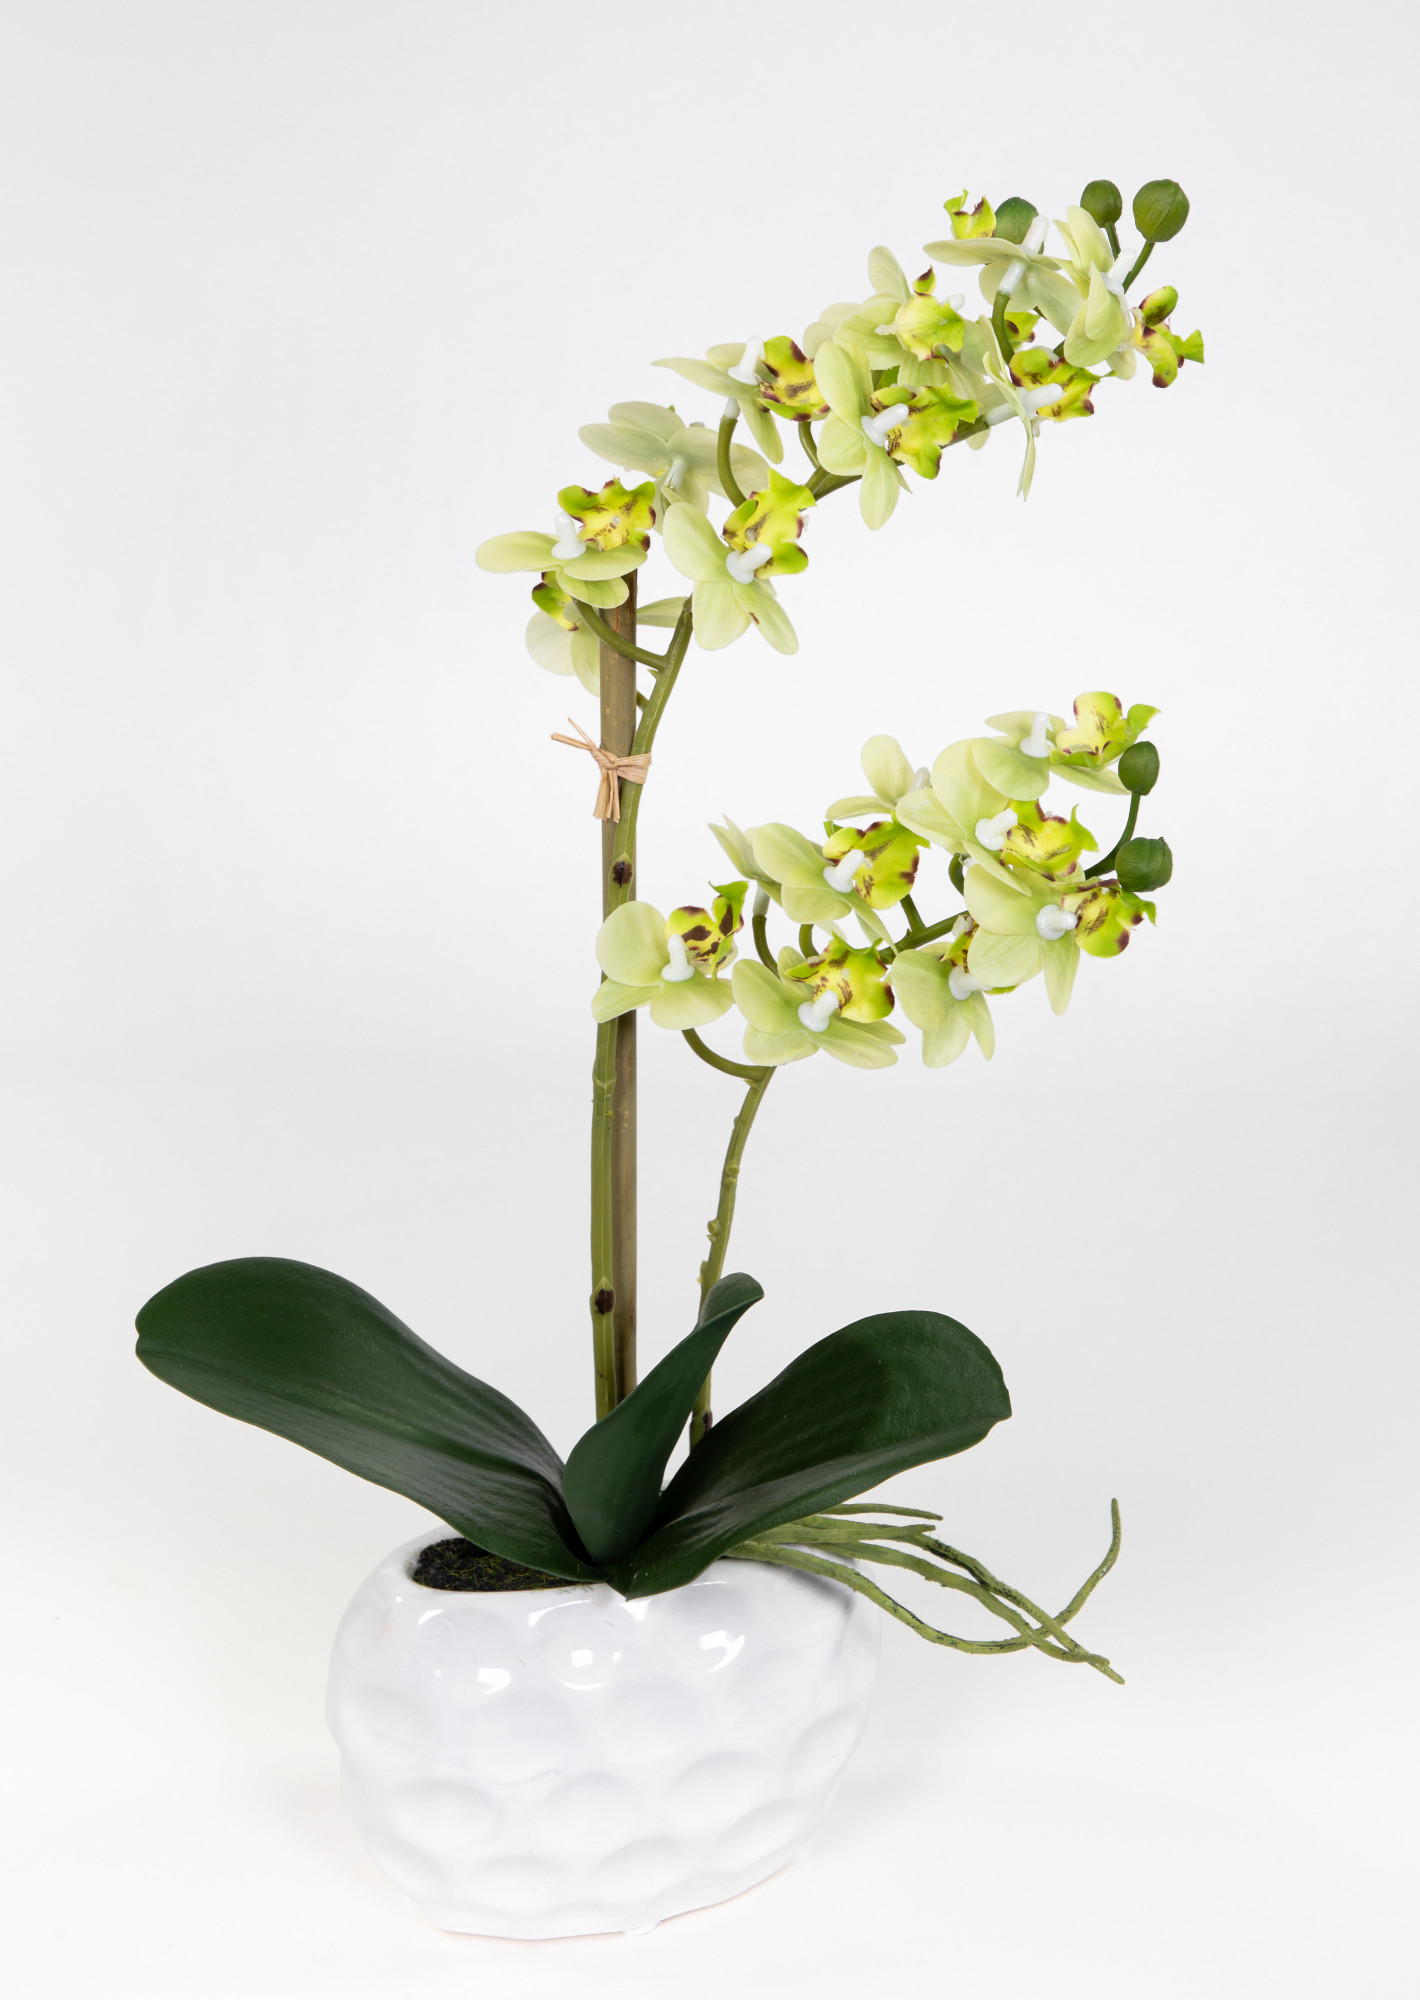 Touch Blumen künstliche weißer Keramikvase grün GA 38x22cm Real in Orchidee Kunstblumen